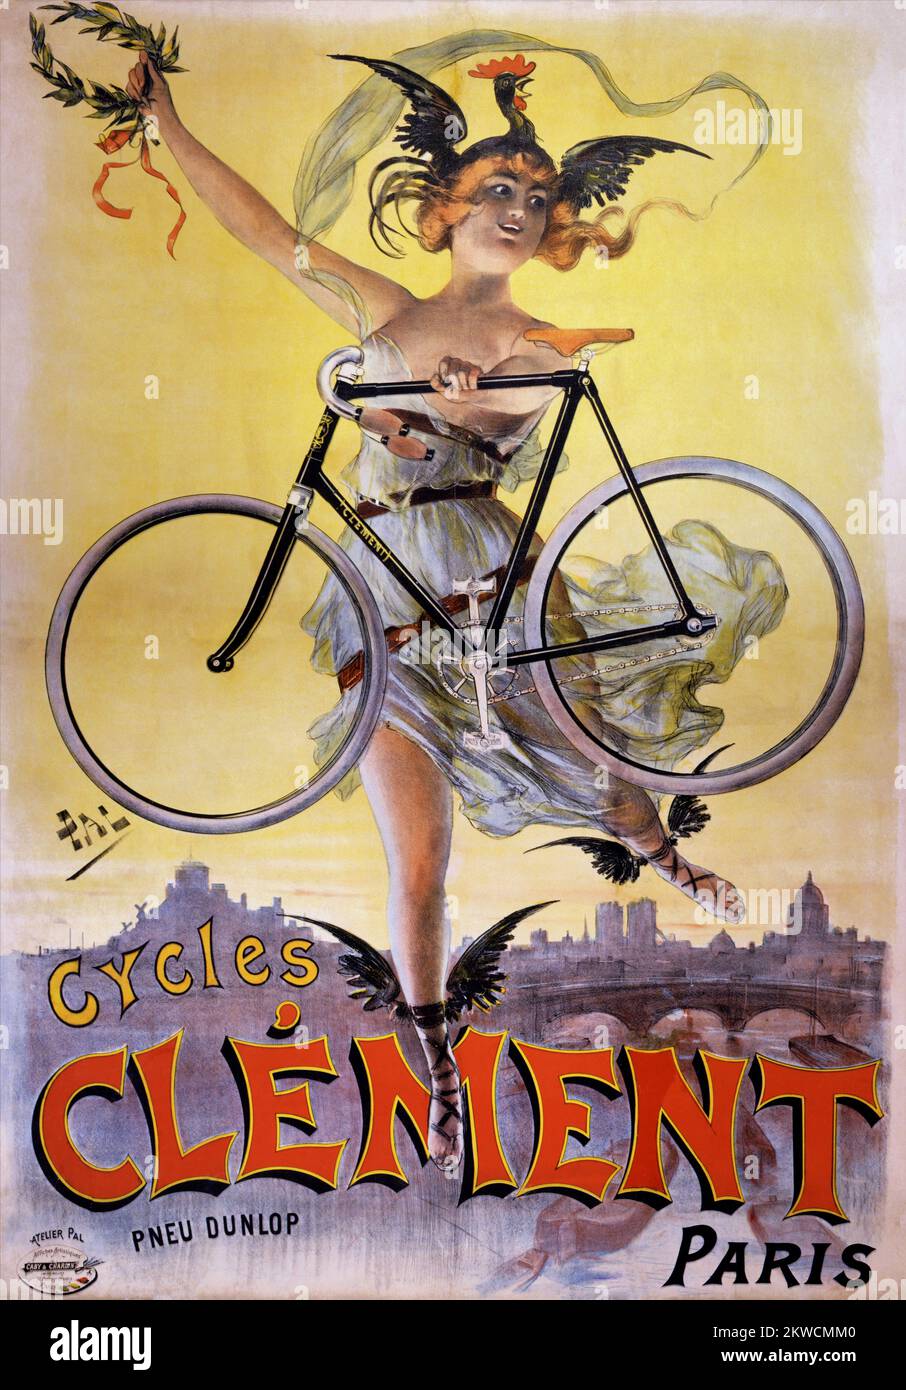 Cycles Clément, Paris. Pneu Dunlop by Jean de Paléologue (PAL 1855–1942). Poster published in 1898 in France. Stock Photo